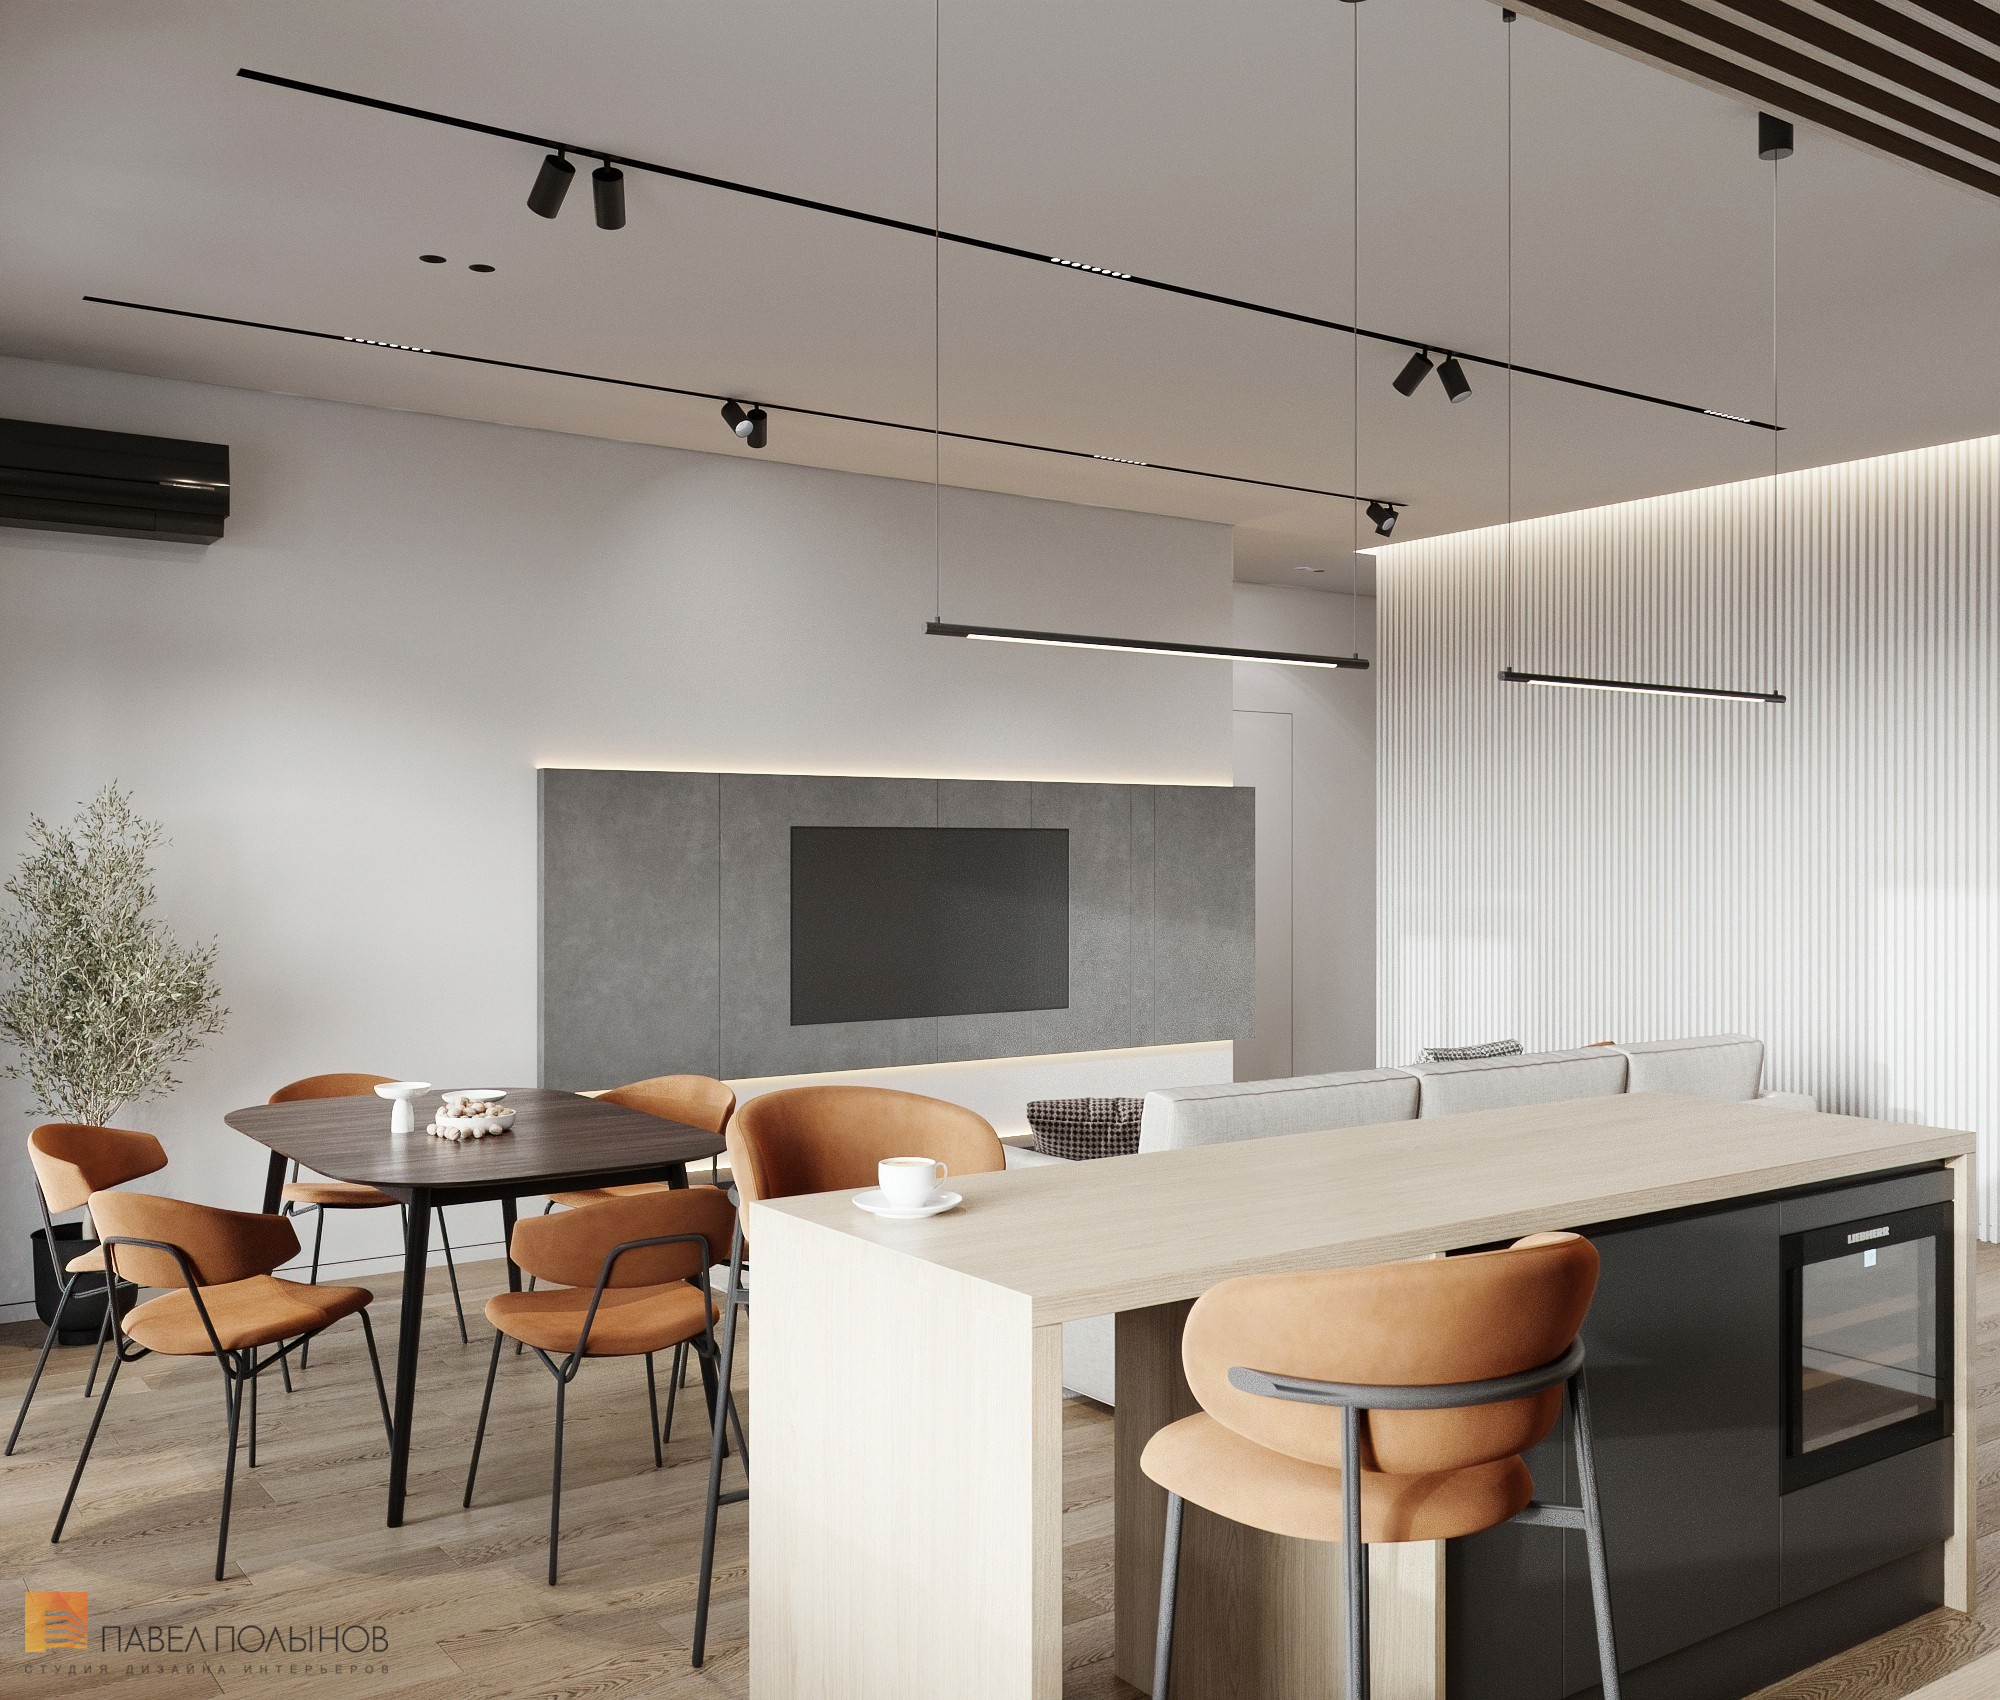 Фото дизайн интерьера кухни-гостиной из проекта «Дизайн интерьера квартиры в современном стиле, ЖК «Сердце столицы», 98 кв.м.»